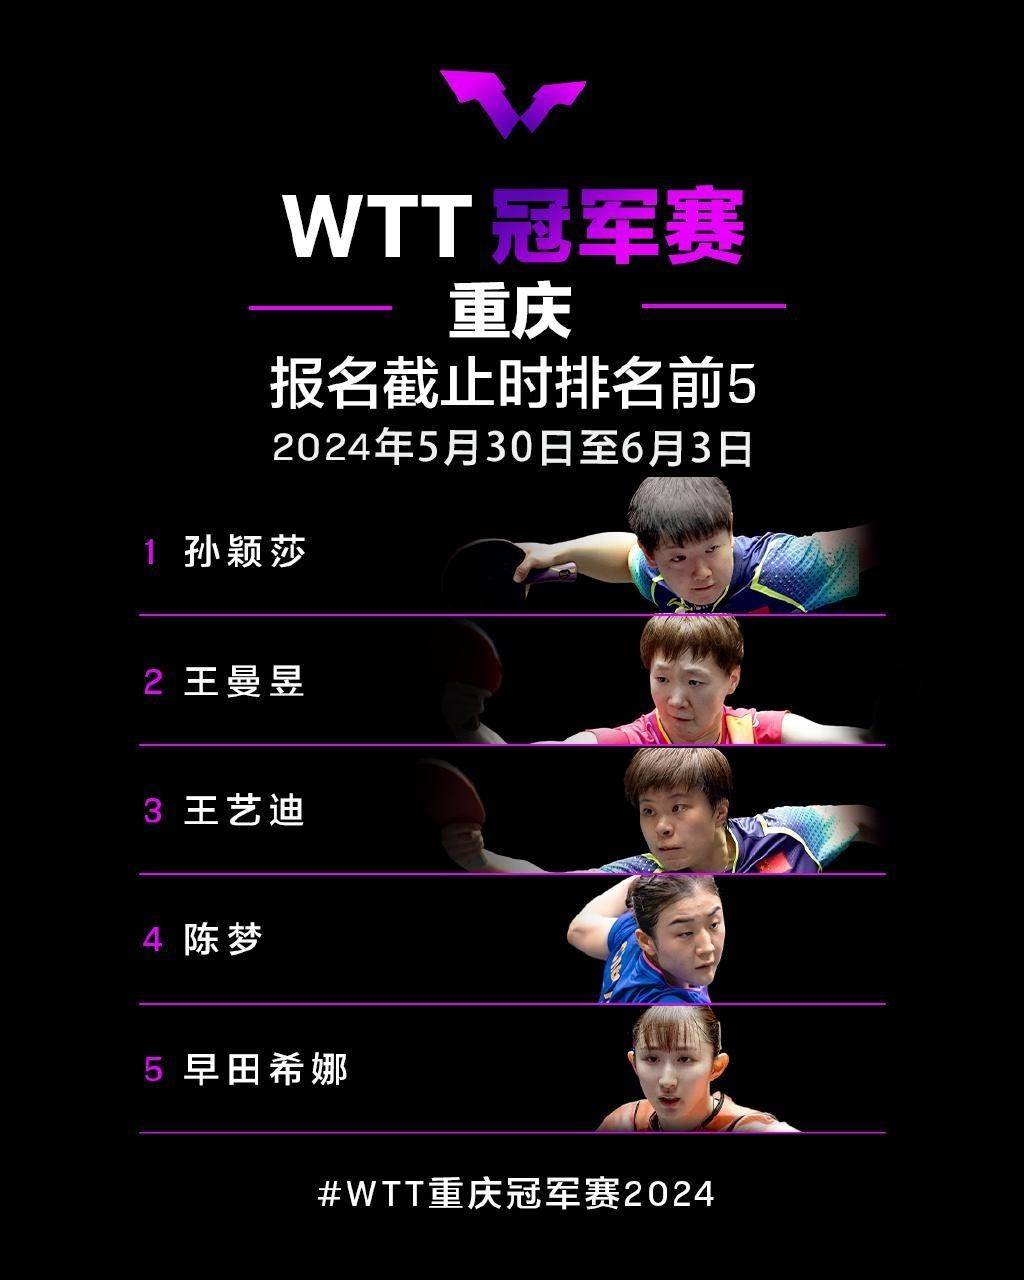 秒没!WTT重庆冠军赛开启售票,半决赛决赛等门票已售罄,官方:齐聚山城,见证巅峰对决